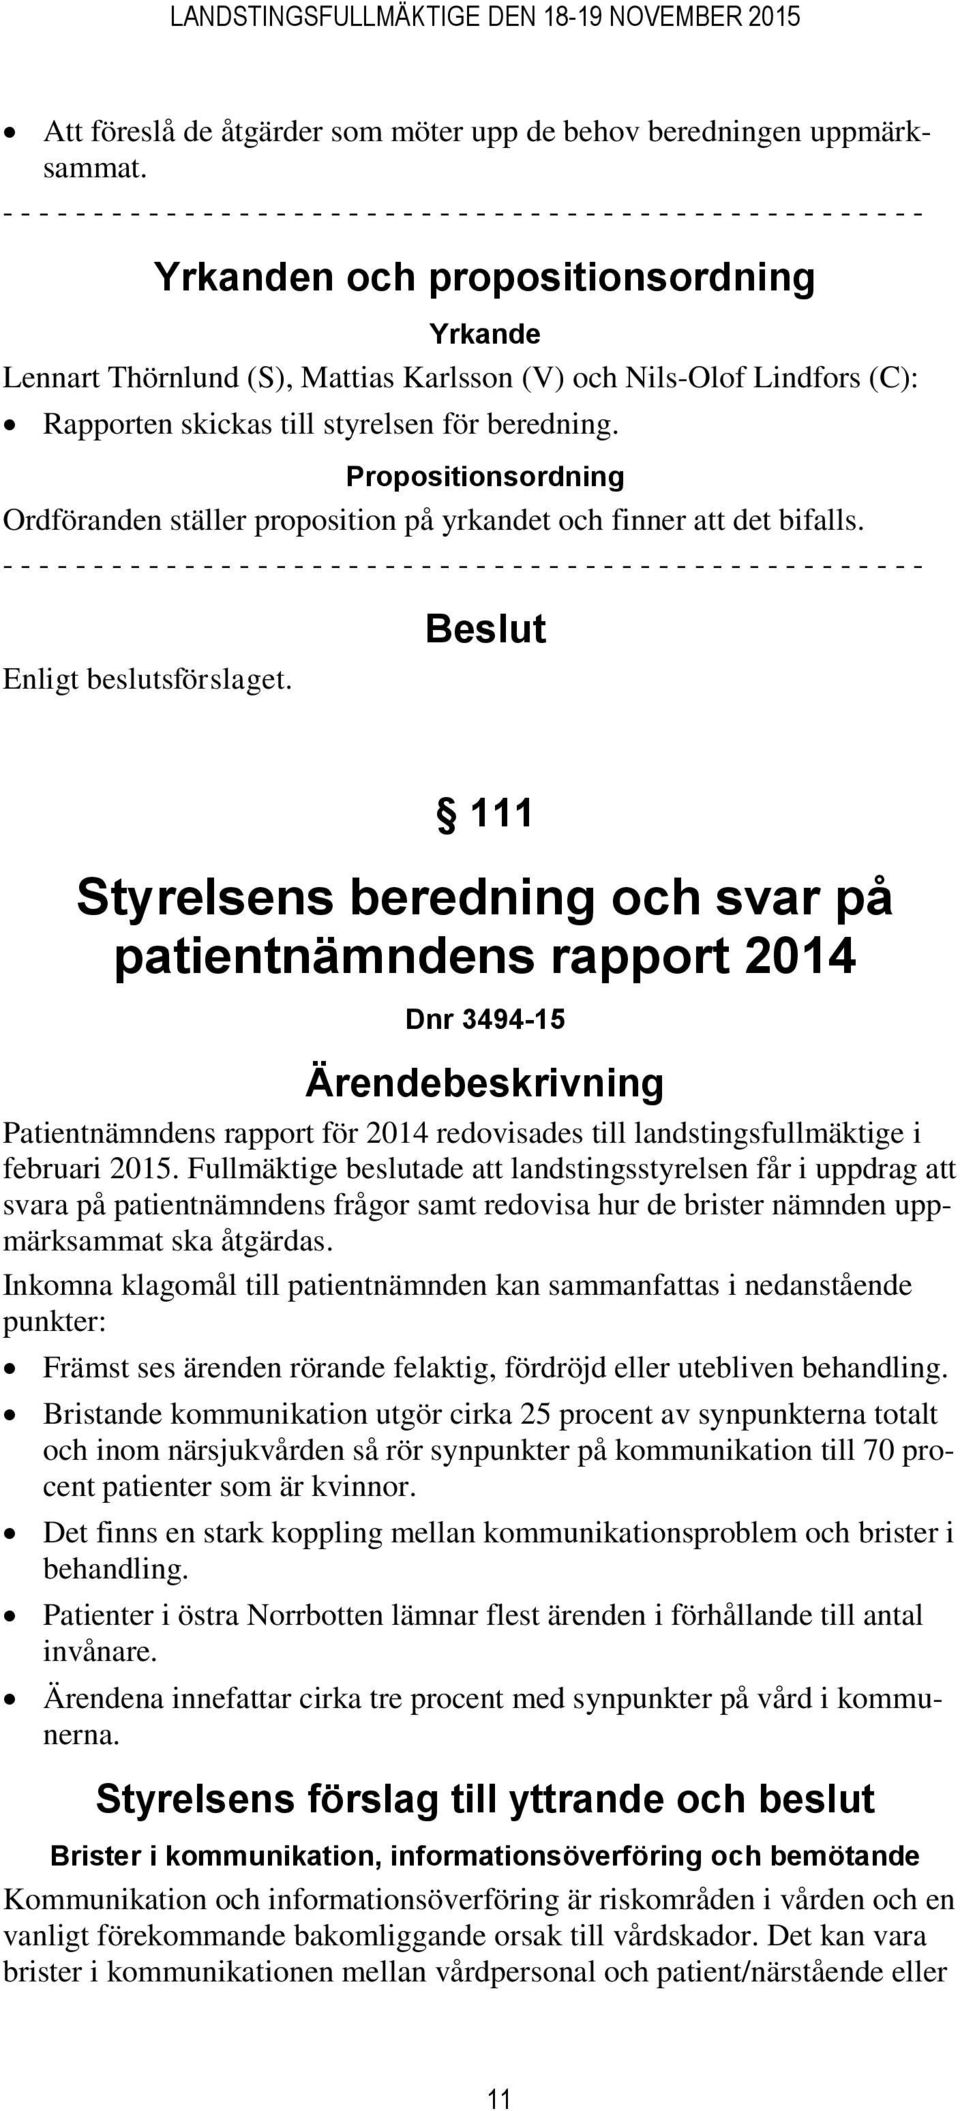 Nils-Olof Lindfors (C): Rapporten skickas till styrelsen för beredning. Propositionsordning Ordföranden ställer proposition på yrkandet och finner att det bifalls.